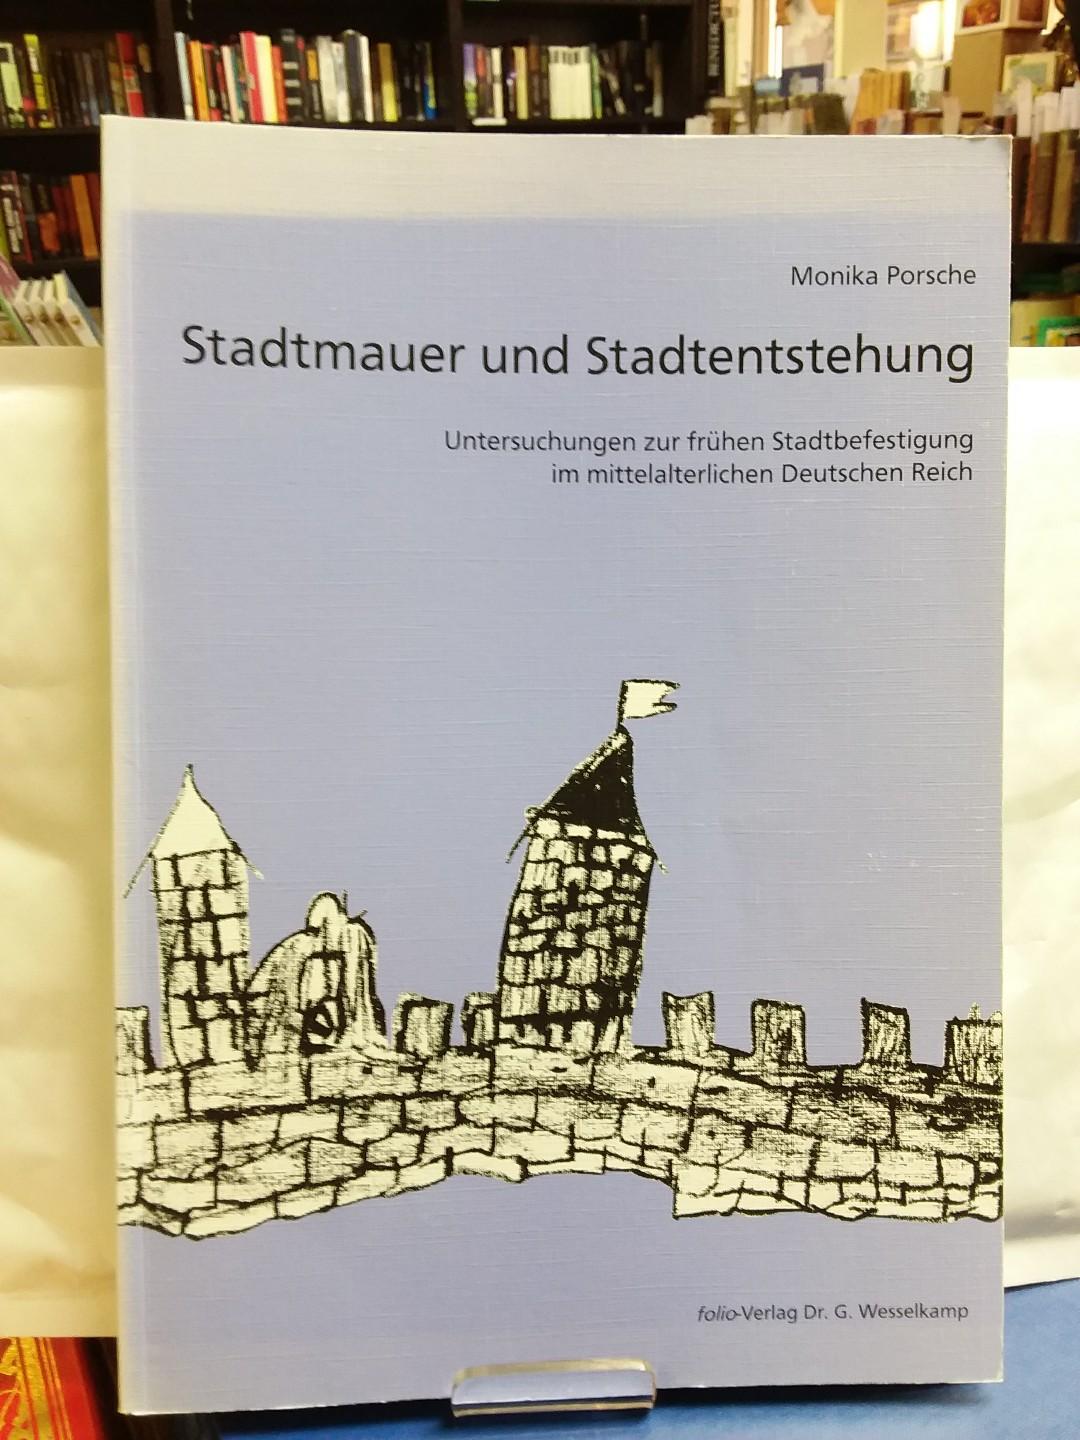 Stadtmauer und Stadtentstehung : Untersuchungen zur frühen Stadtbefestigung im mittelalterlichen deutschen Reich. - Porsche, Monika